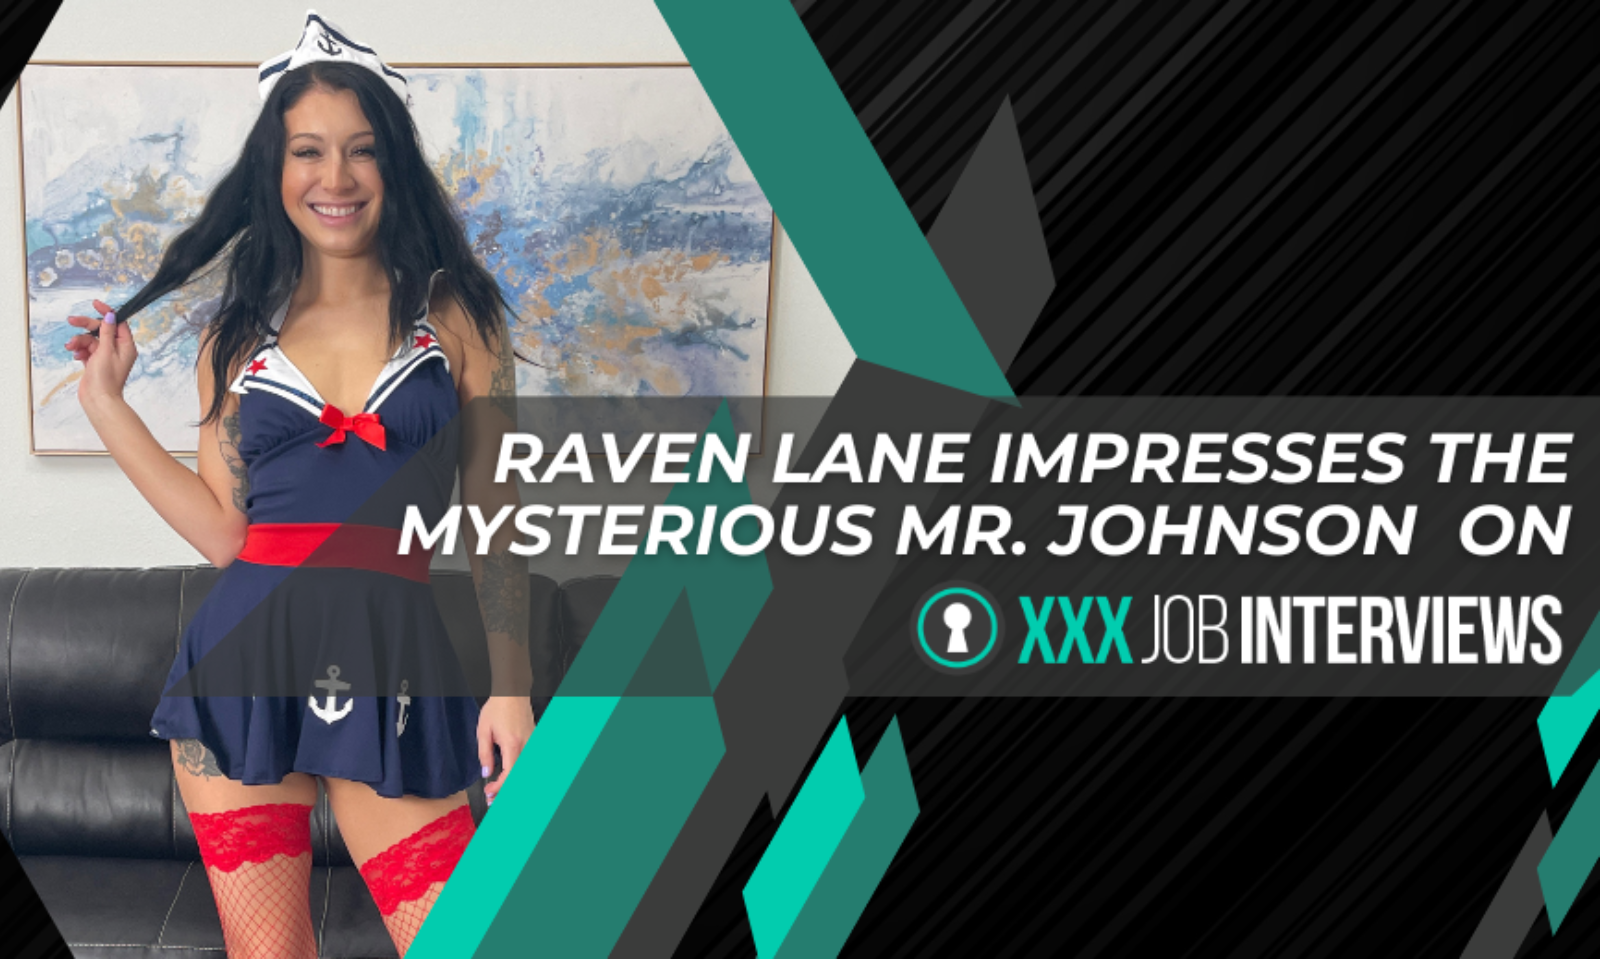 Raven Lane Stars in New Scene for XXXJobInterviews.com